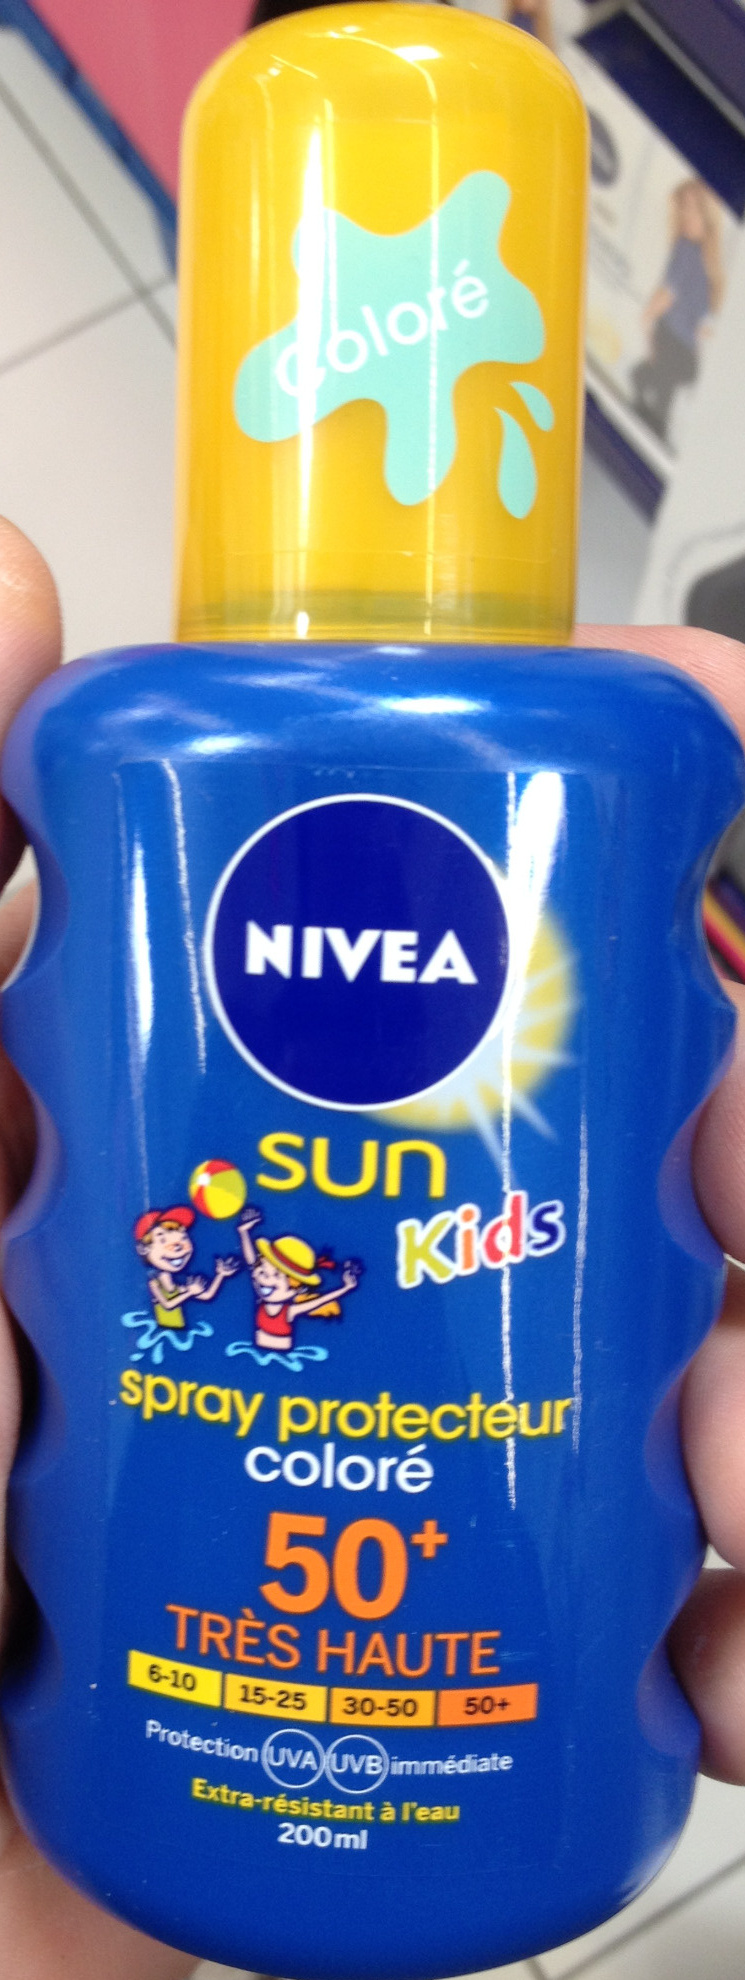 Spray protecteur coloré 50+ Sun Kids - Product - fr